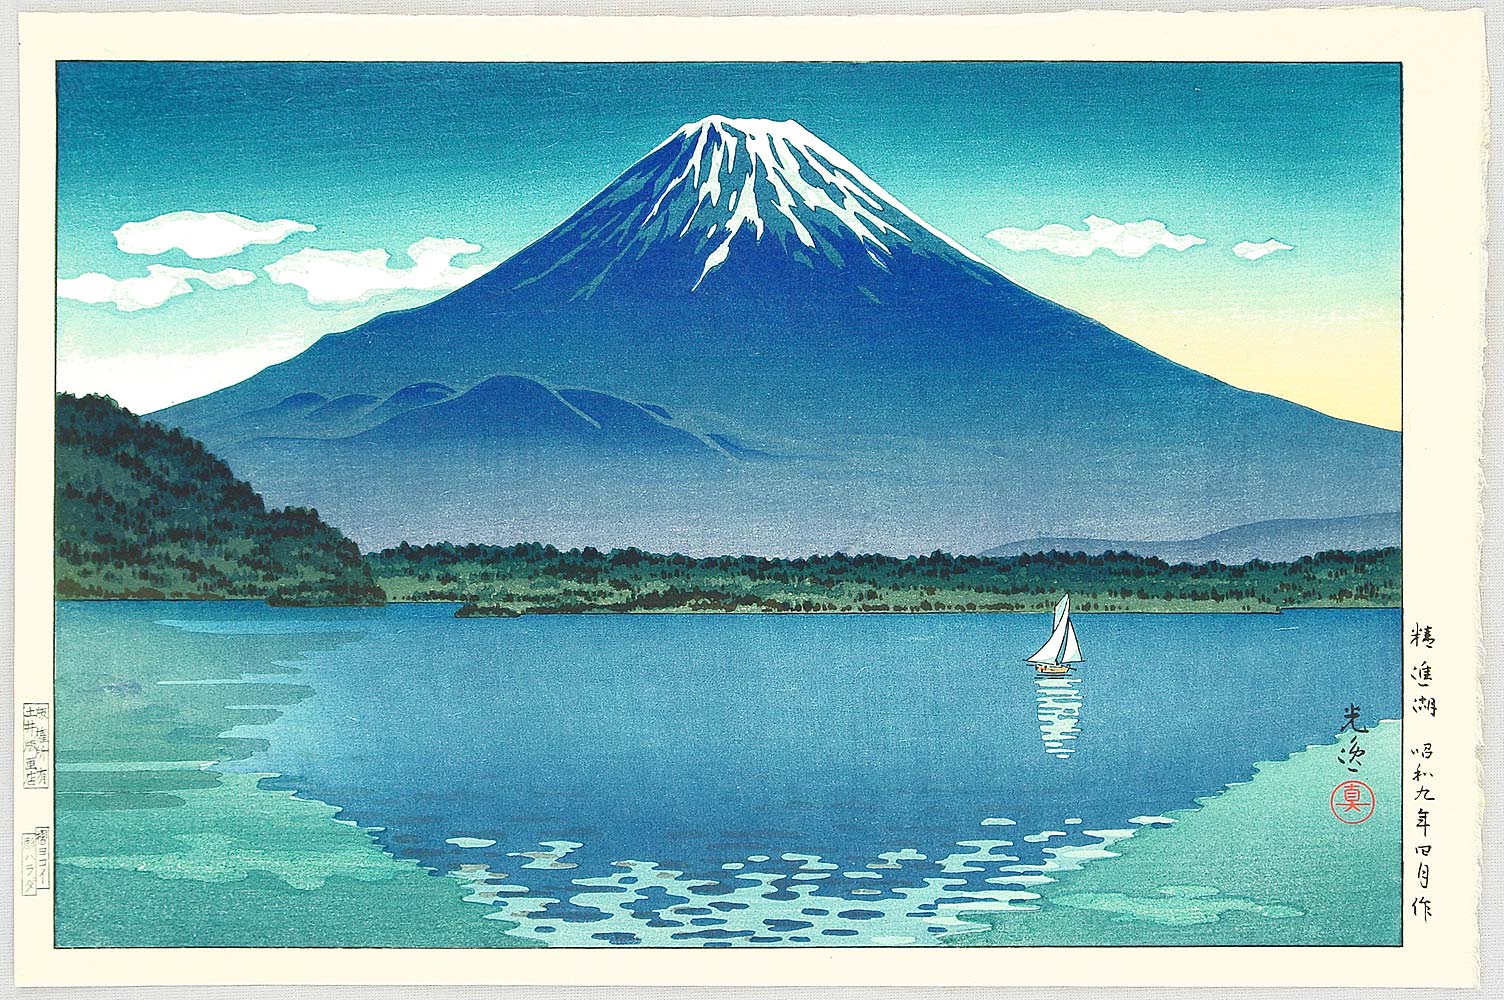 Tsuchiya Koitsu: Lake Shoji - 精進湖 - Ohmi Gallery - Ukiyo-e Search